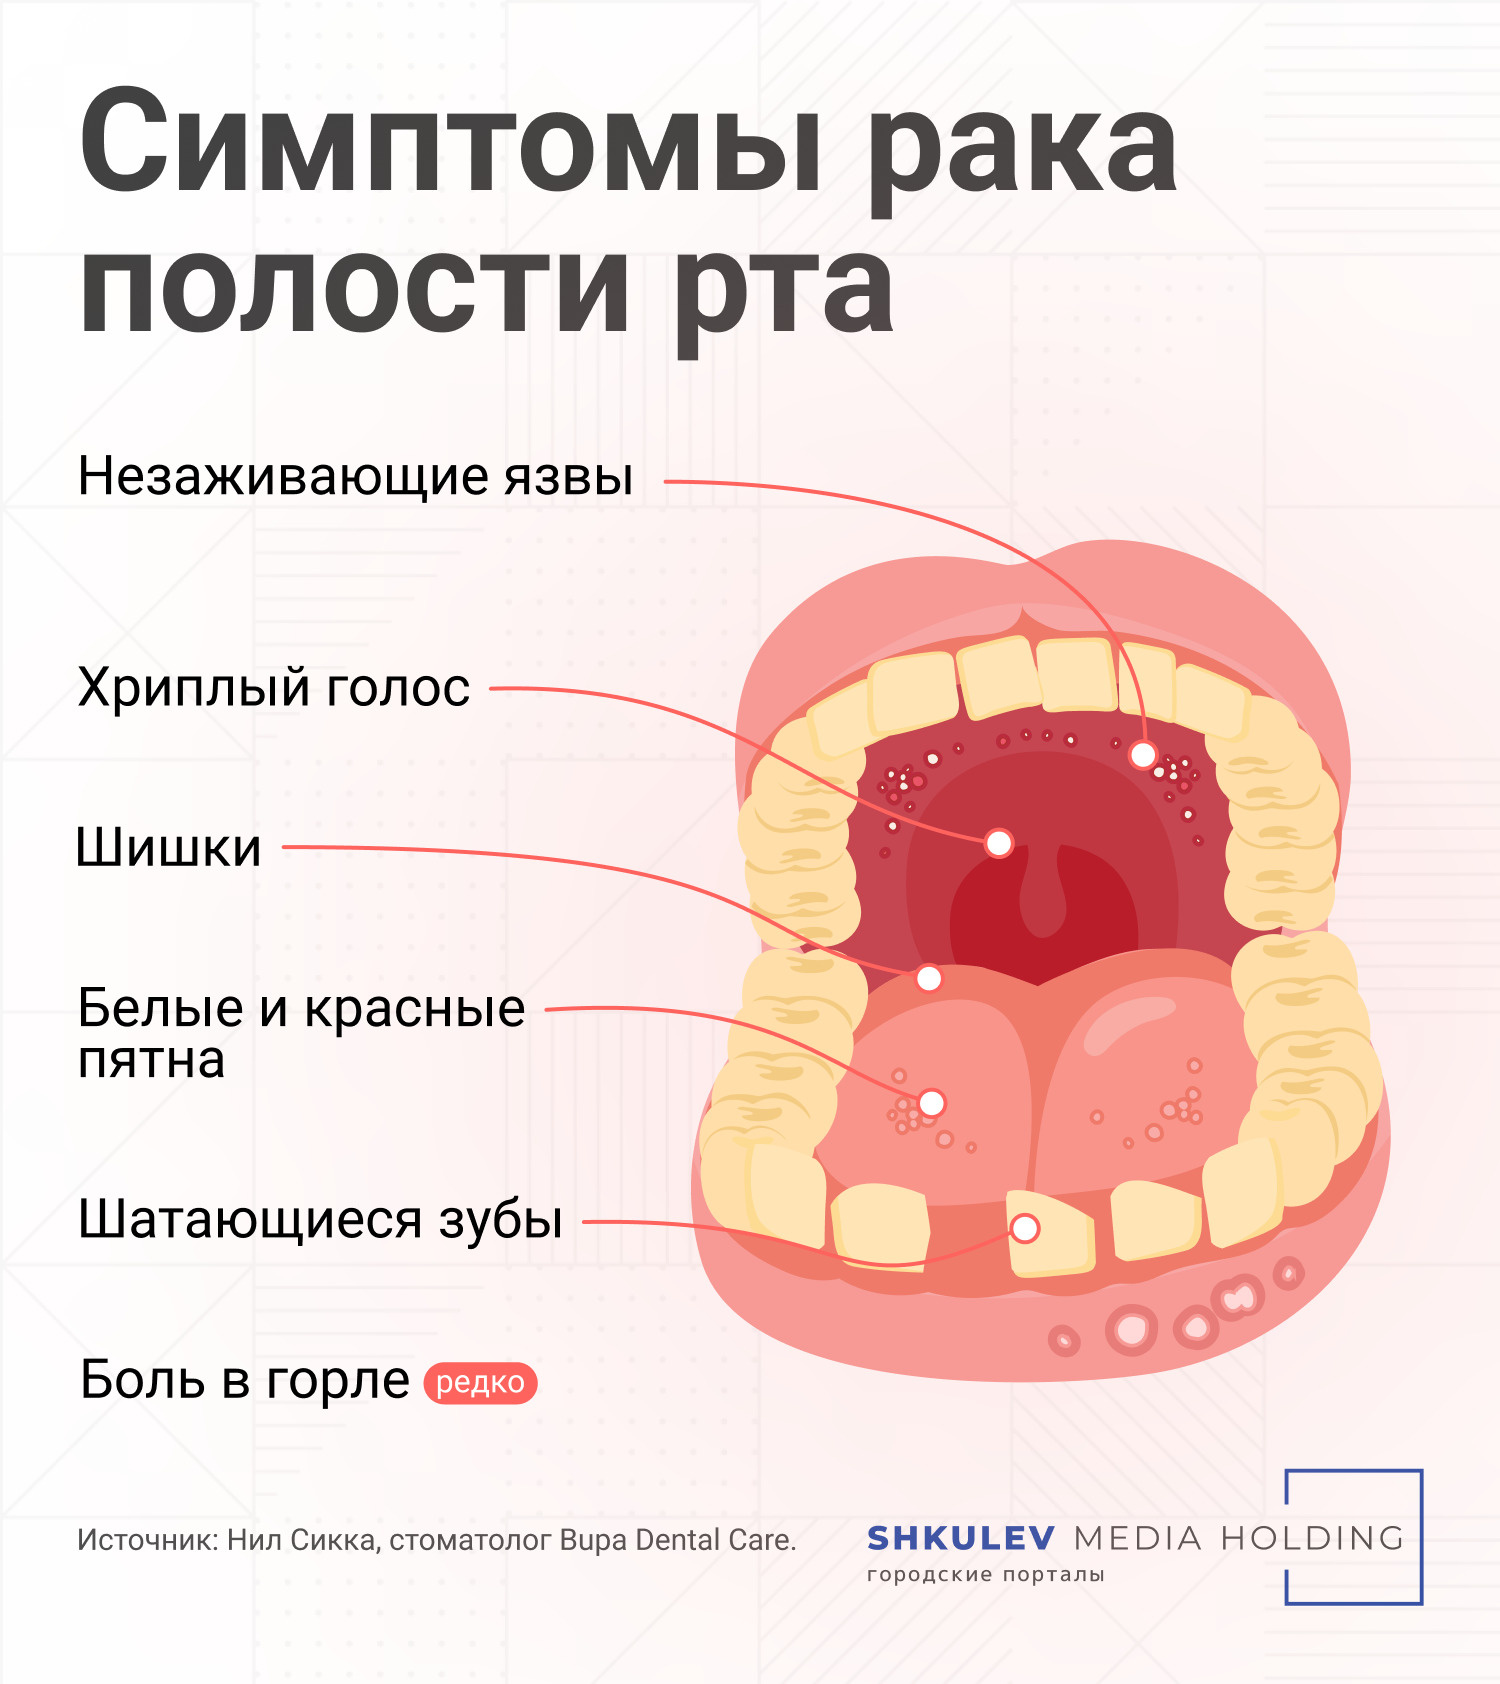 Основные признаки рака полости рта, на которые следует обратить внимание